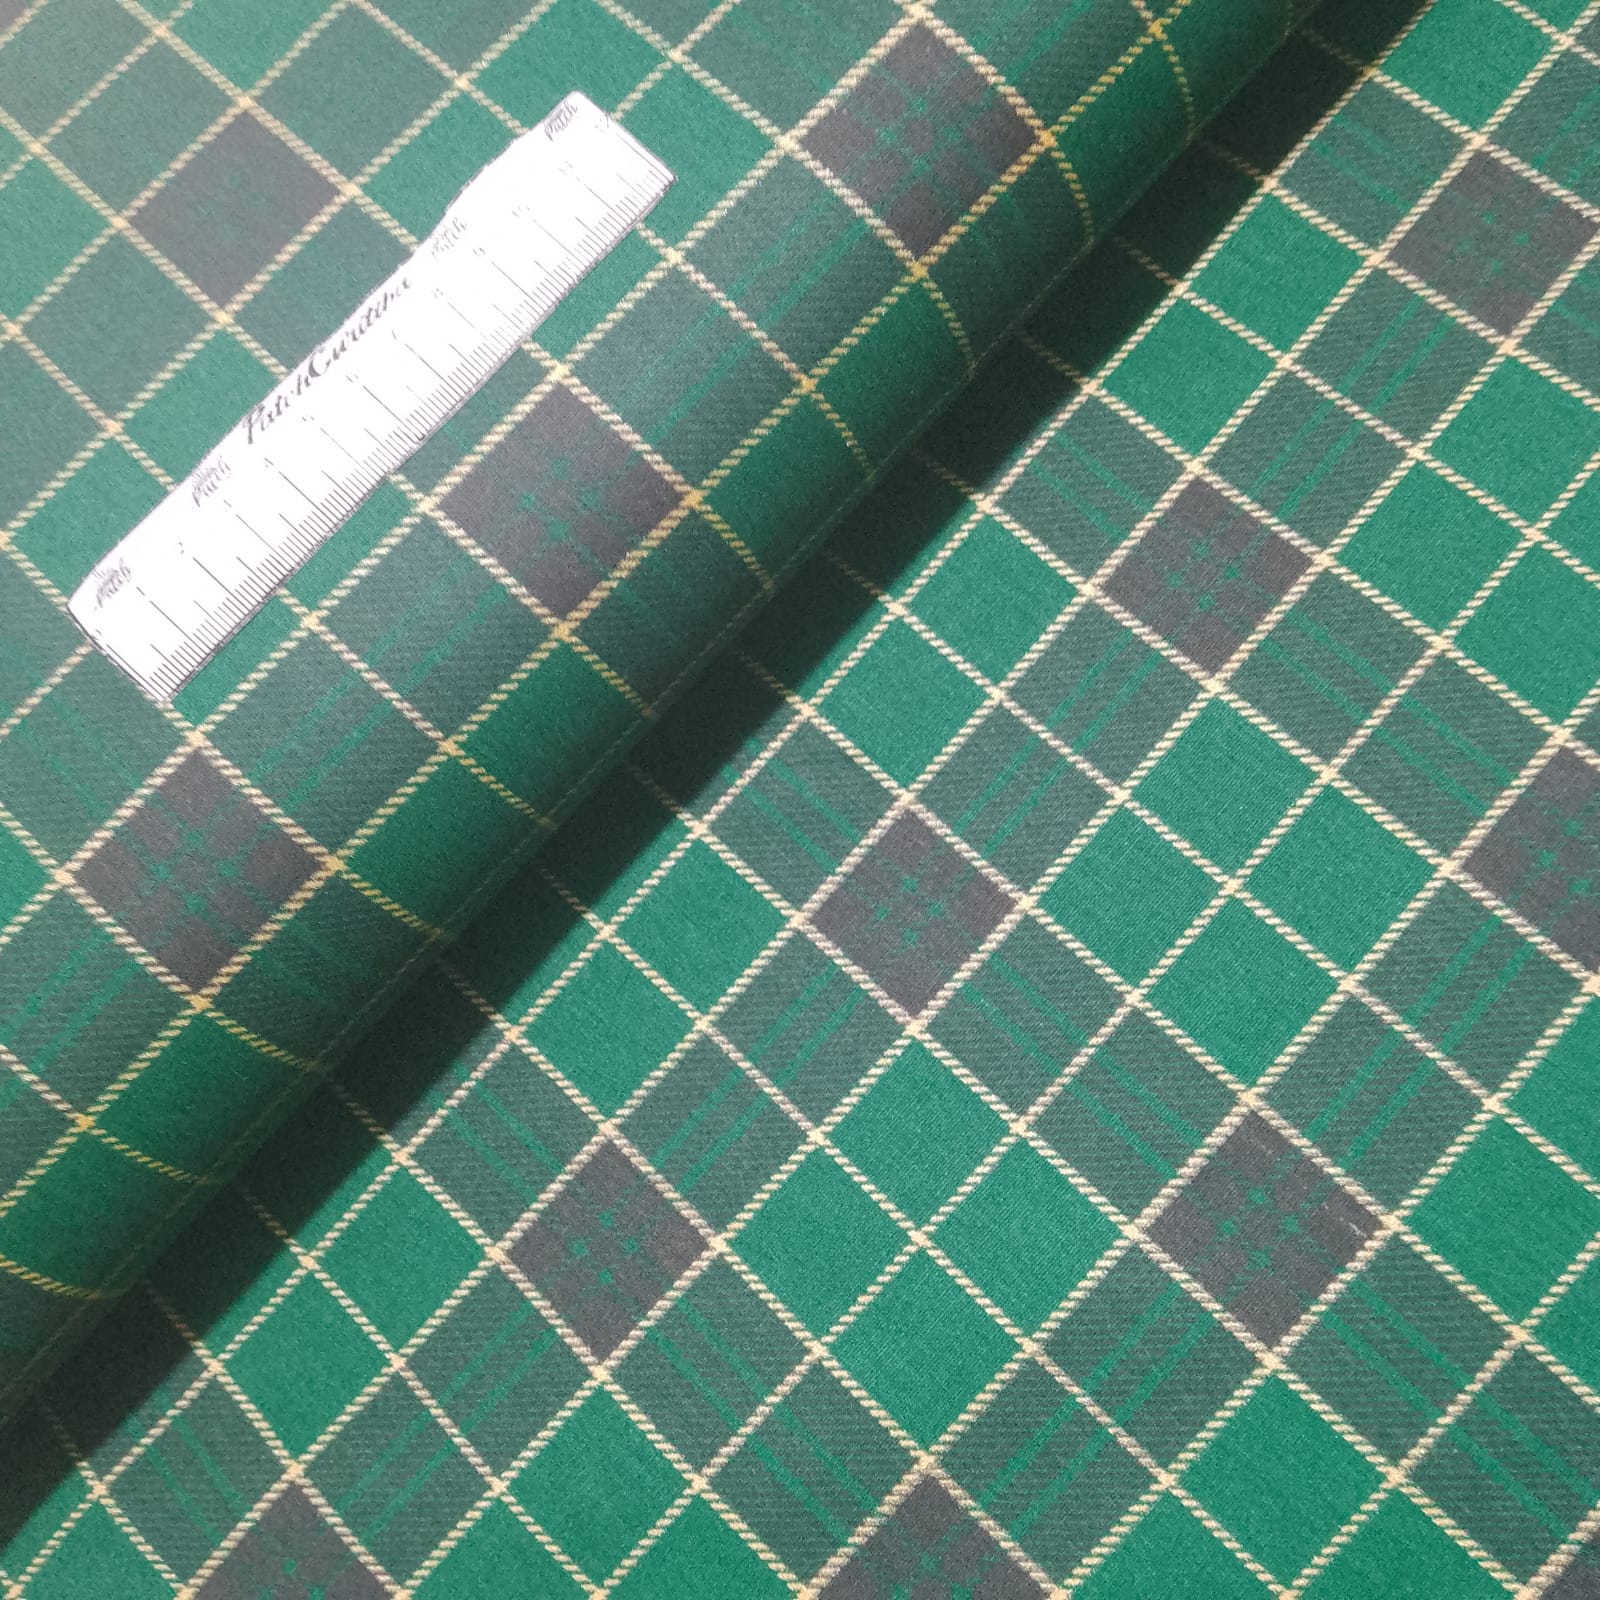 Tecido Tricoline Xadrez Verde - PatchworkCuritiba - Tecidos Tricoline 100%  Algodão. Fabricação Nacional